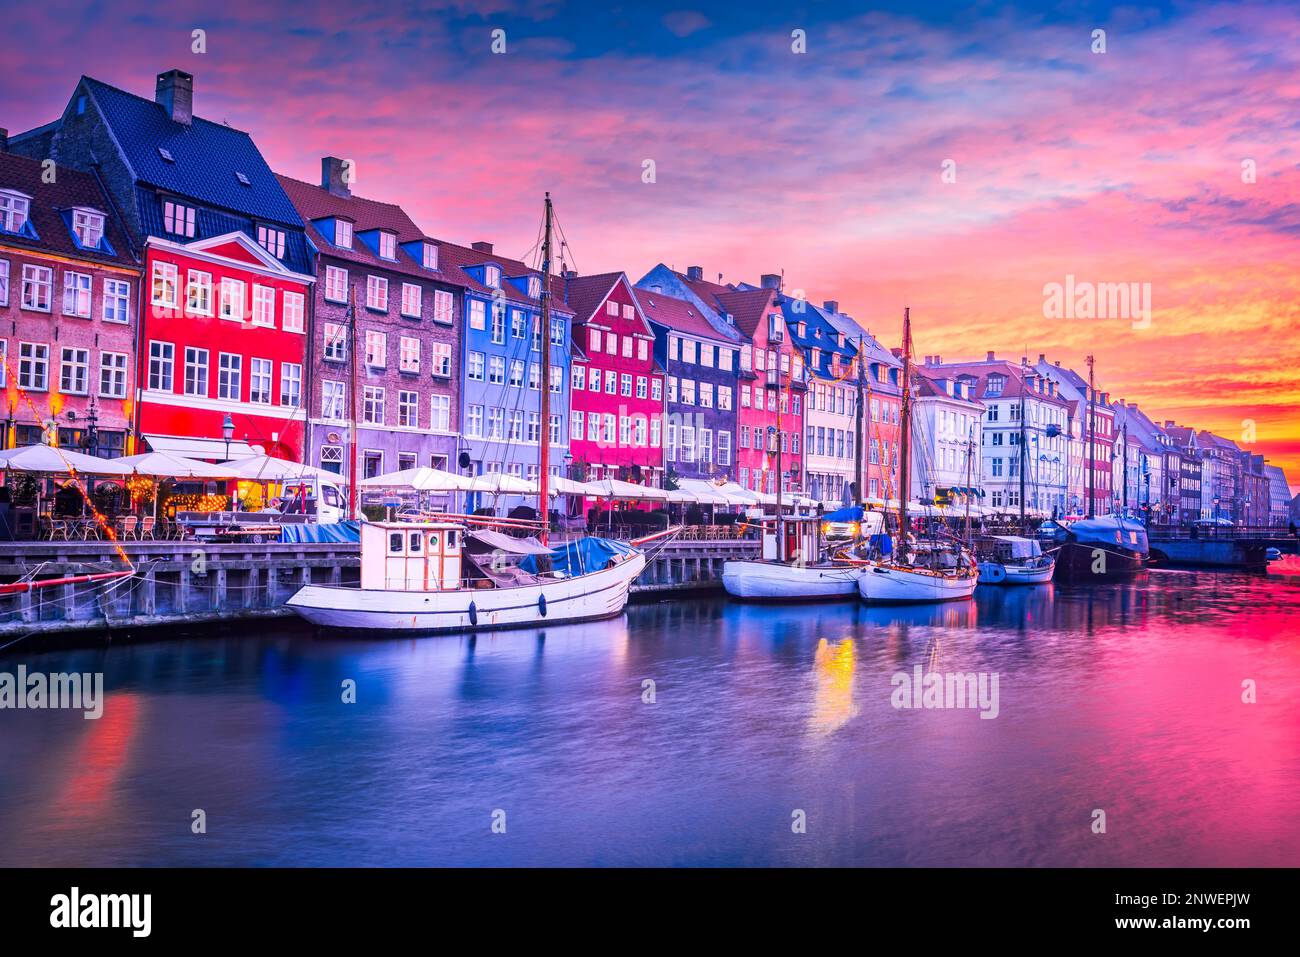 Copenhague, Danemark. Beauté à couper le souffle du canal de Nyhavn au lever du soleil, avec ses bâtiments emblématiques colorés et ses reflets sereins sur l'eau. Banque D'Images